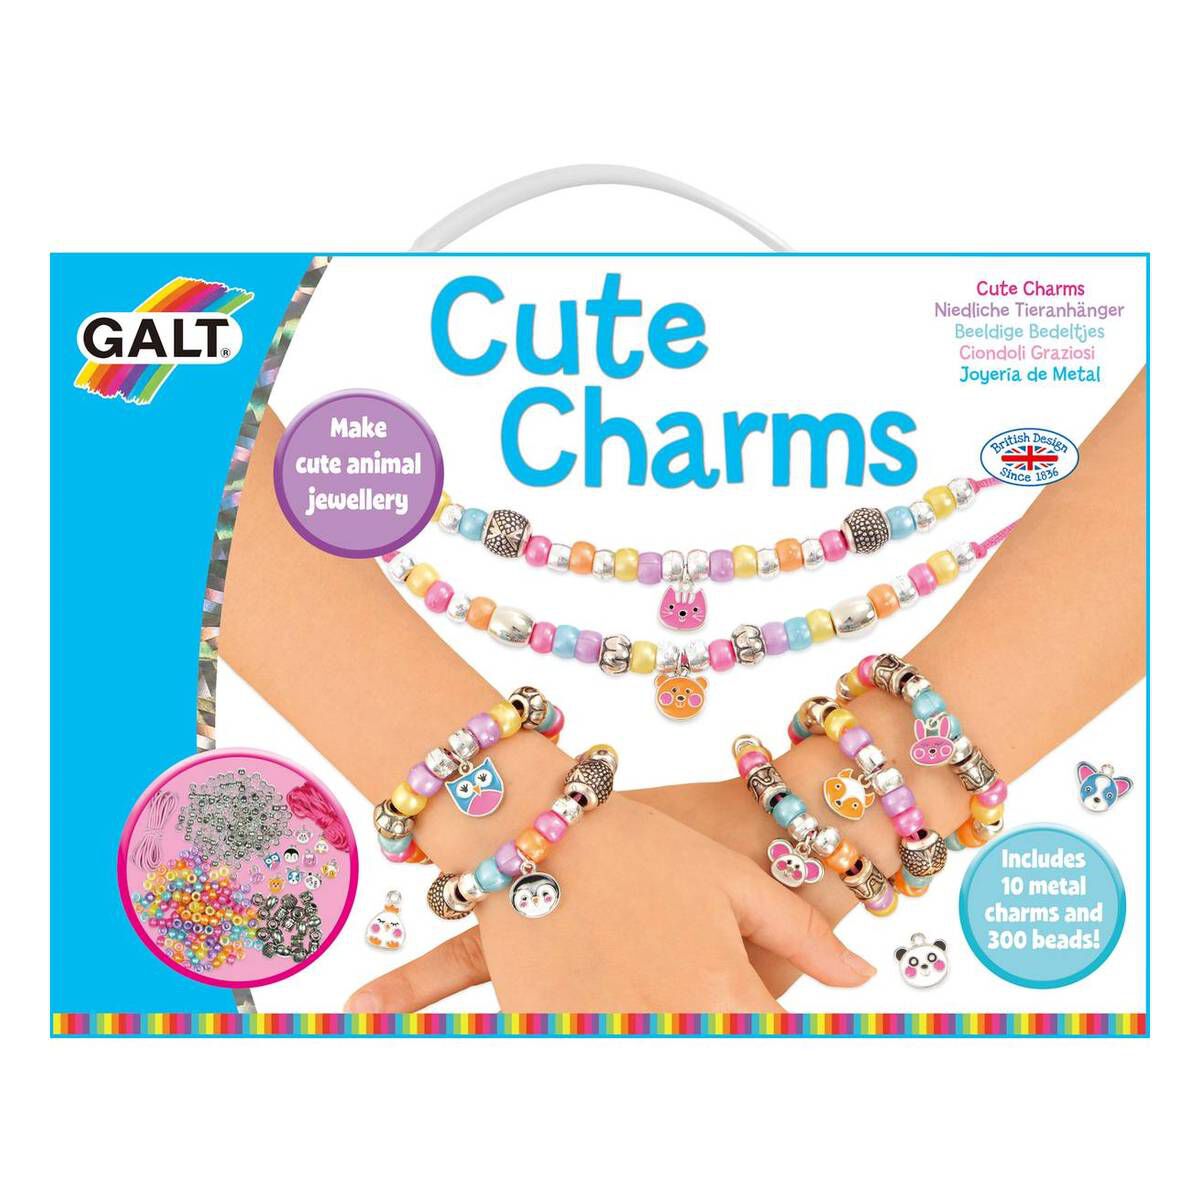 Kids Jewelry Making Kits in Arts & Crafts for Kids - Walmart.com